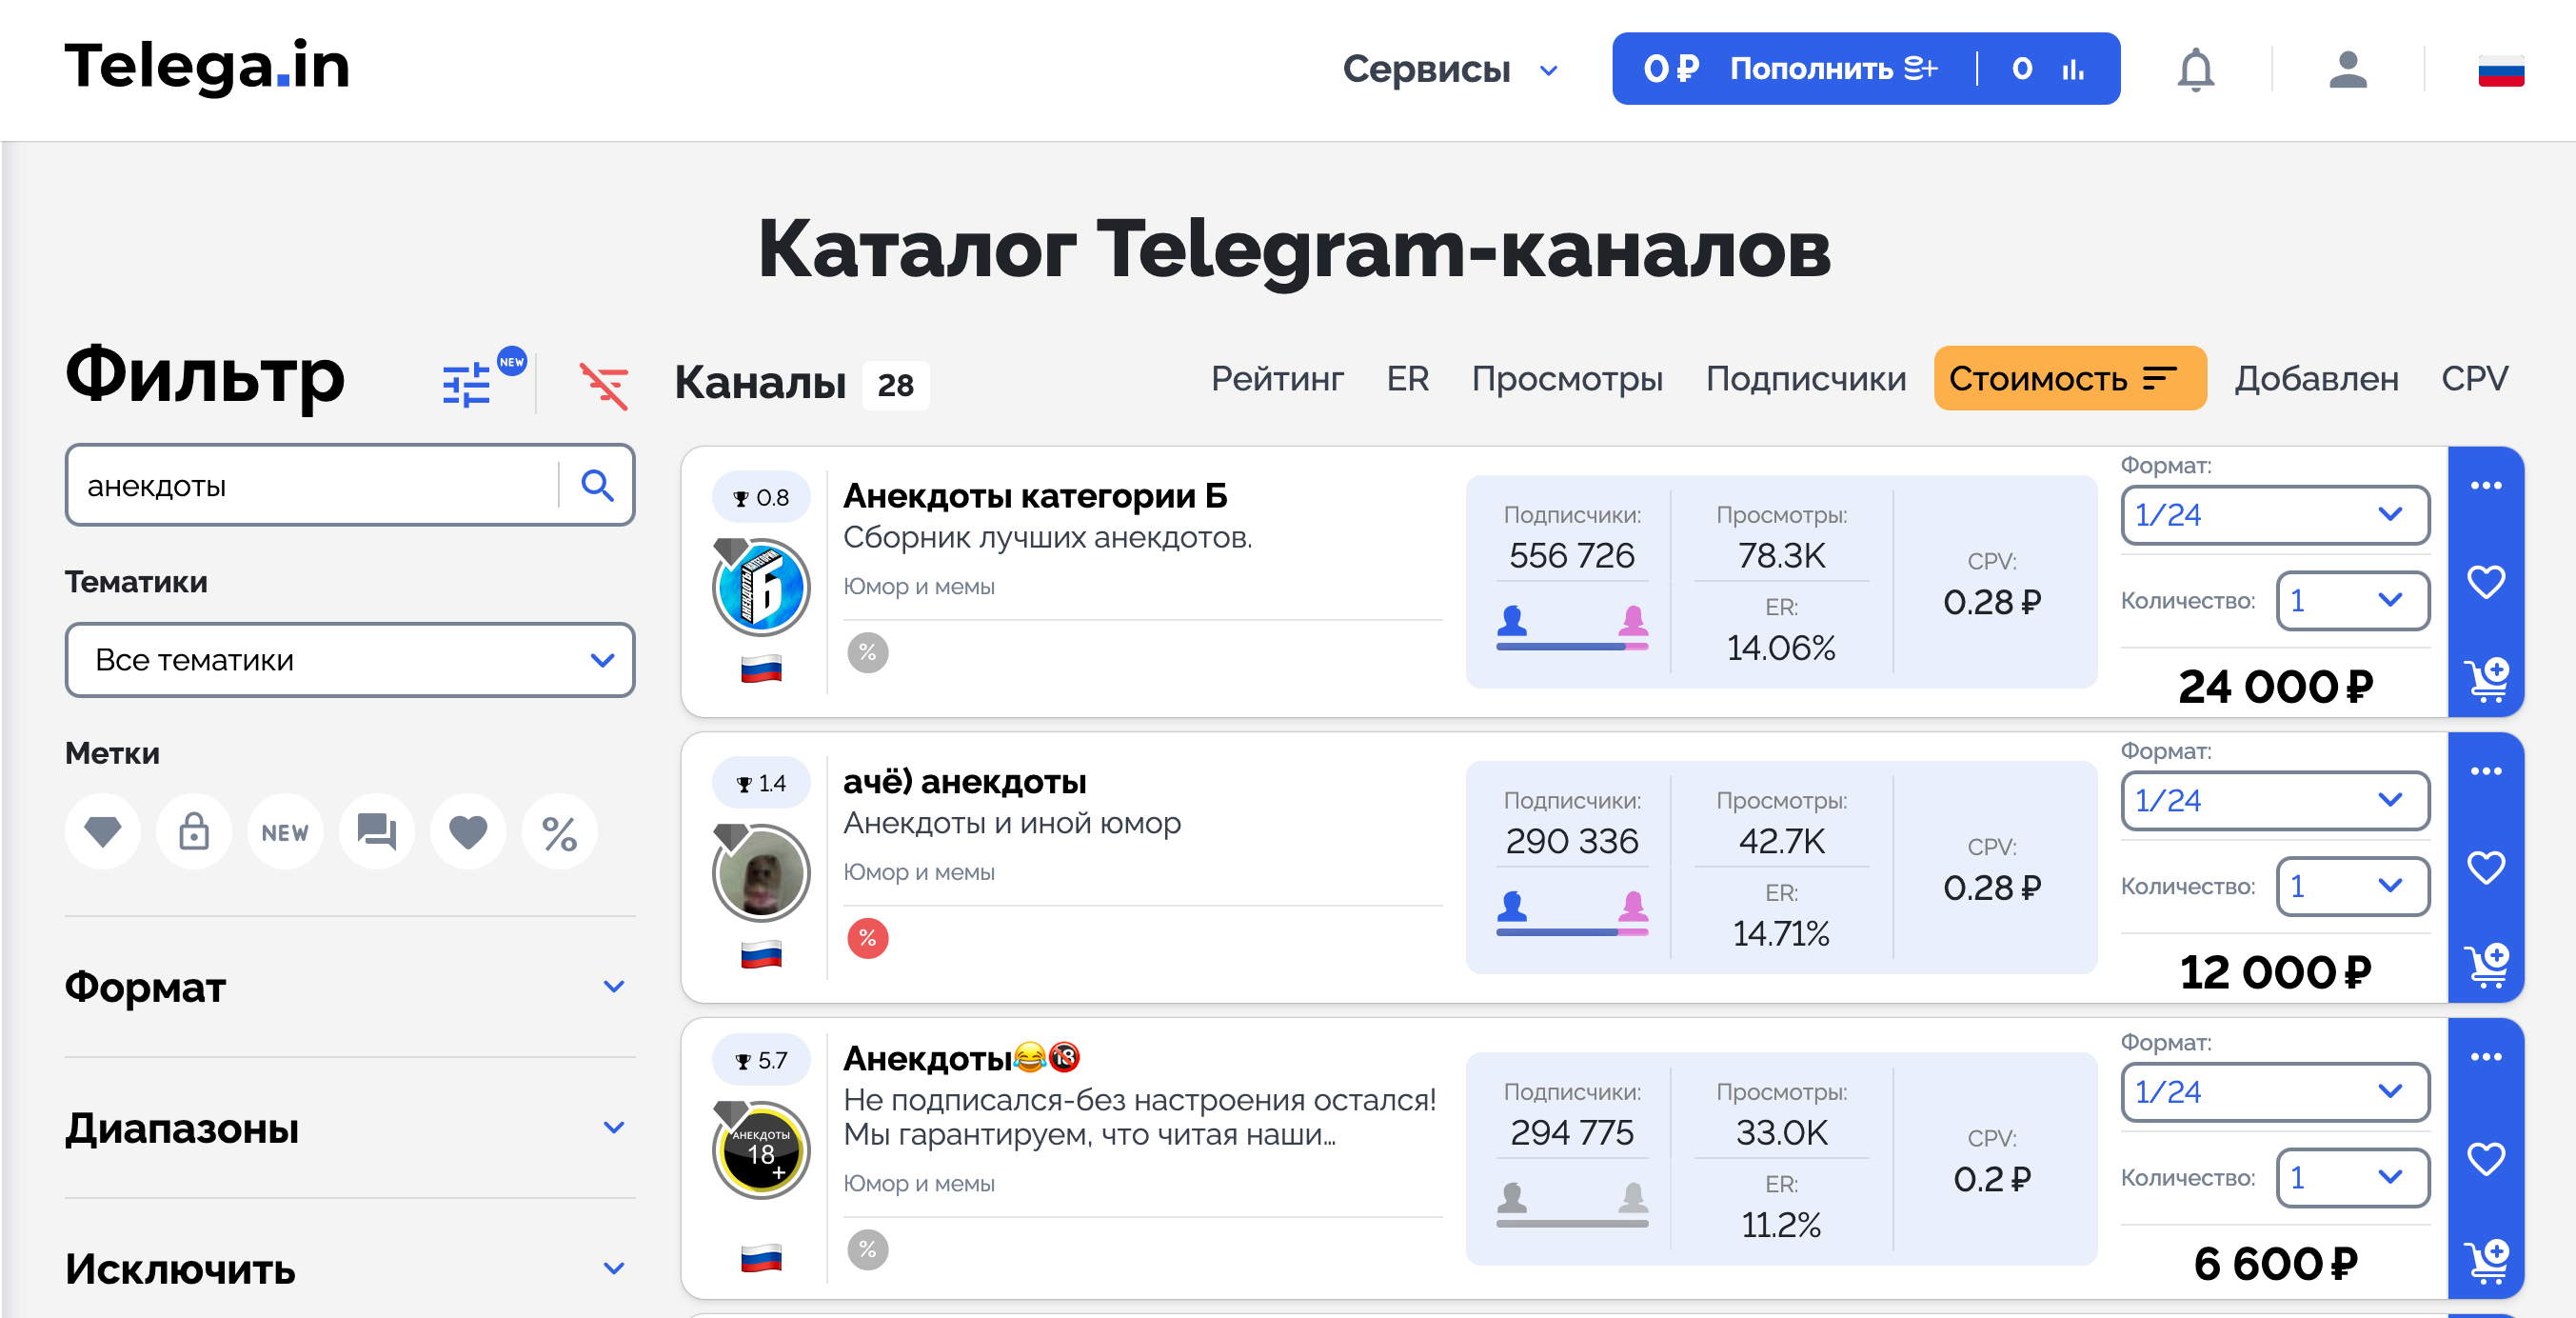 Заработок в телеграмме без вложений на русском с выводом денег фото 100